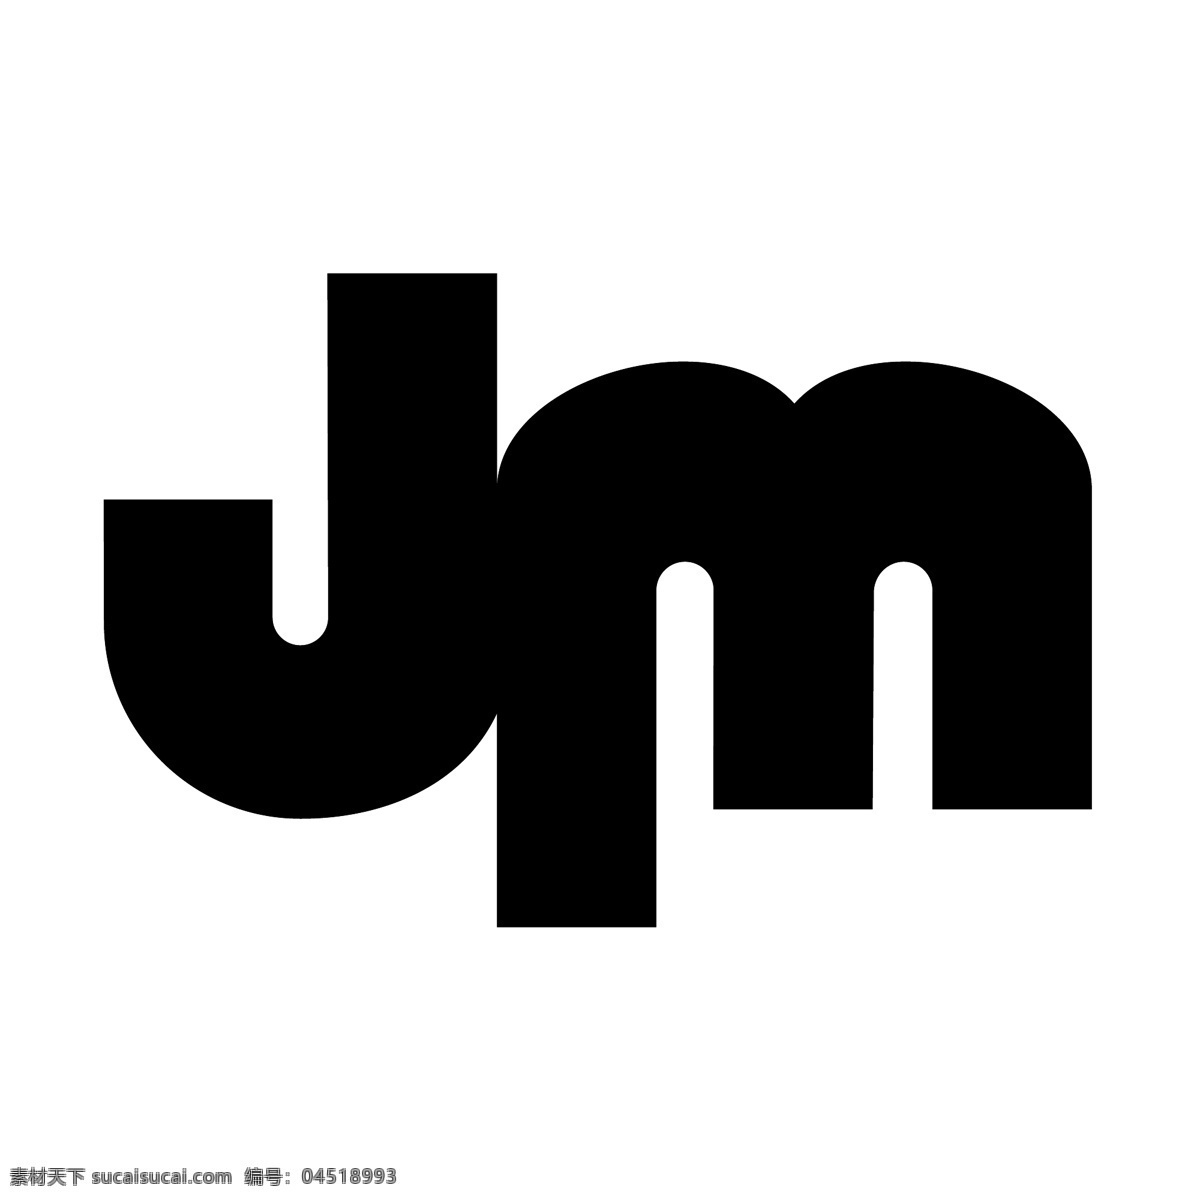 logo设计 jm标识 矢量标志jm 矢量jm标识 标识标志jm jm jm标识向量 jm设计 jm标识设计 矢量 阿尔塔 costura slovnk podstatnjm 没有 污点 矢量图 建筑家居